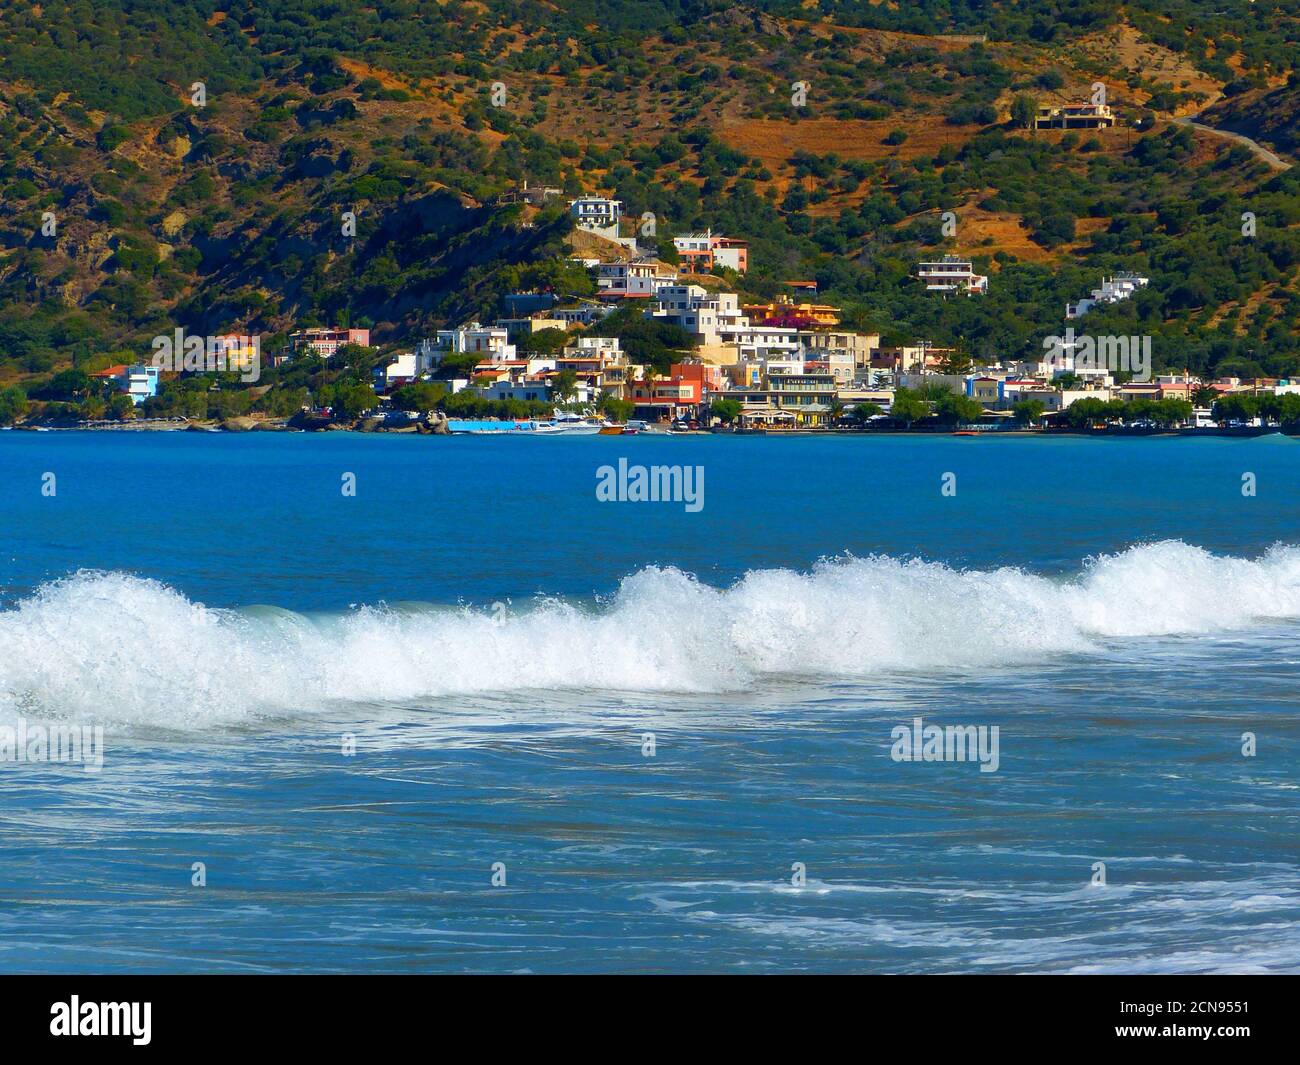 Bleu azur mer Méditerranée avec de belles vagues près du village de Plakias, île de Crète, Grèce en été, paysage rural idyllique. Mer de Lybean. Banque D'Images